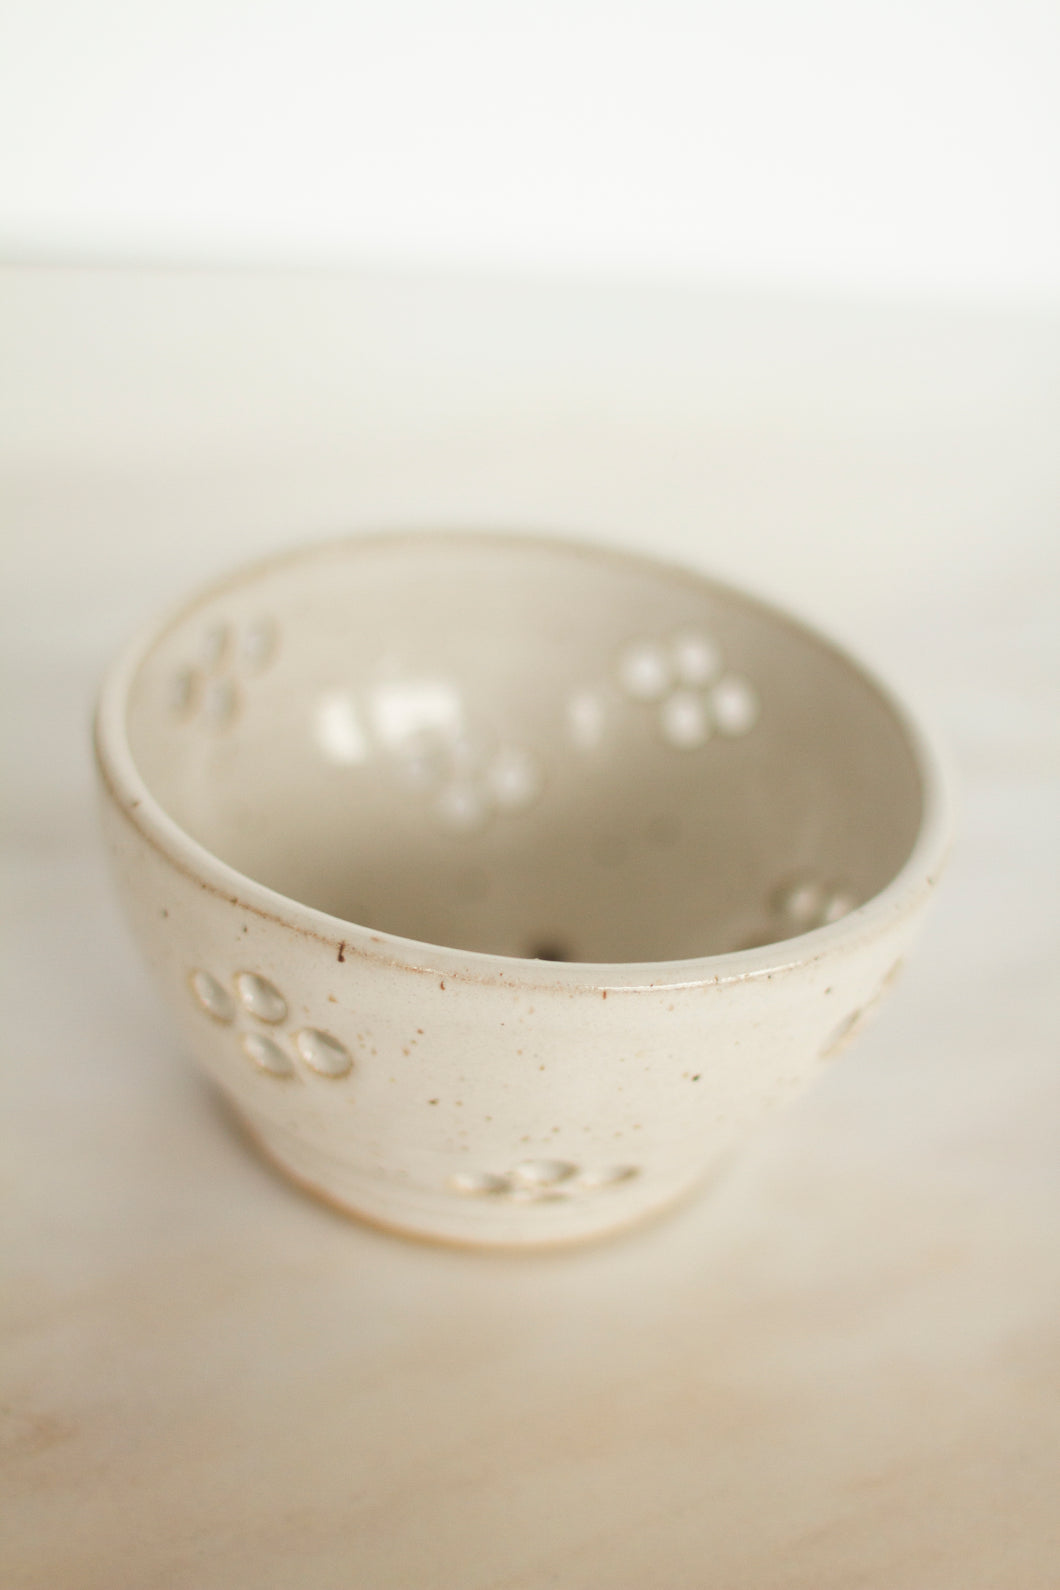 miss mary jane  *handmade hand thrown ceramic  berry bowl*